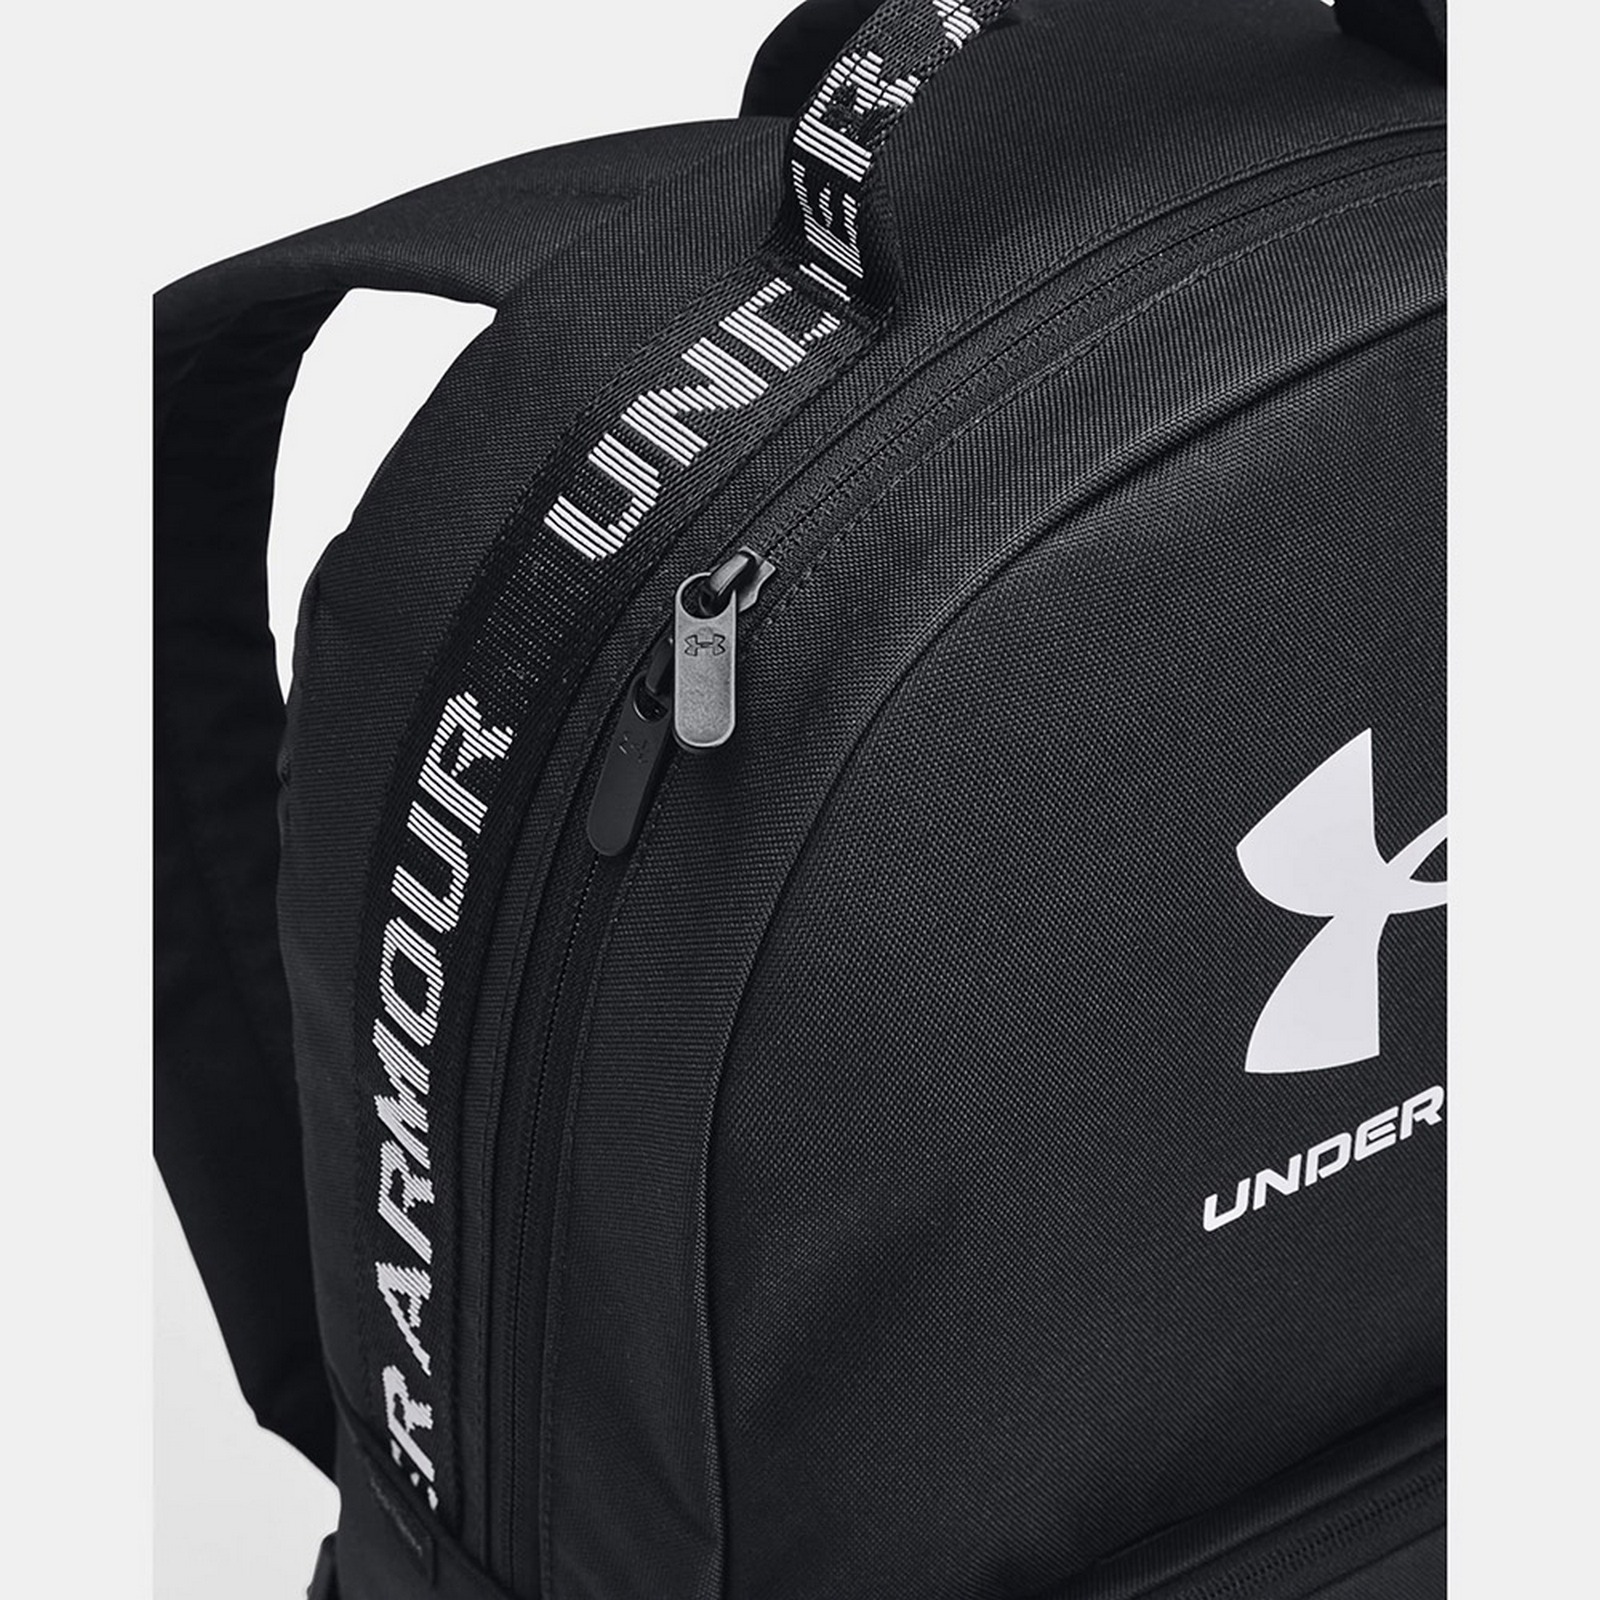 Рюкзак спортивный  Loudon Backpack, полиэстер Under Armour 1378415-001 черно-белый 1600_1600